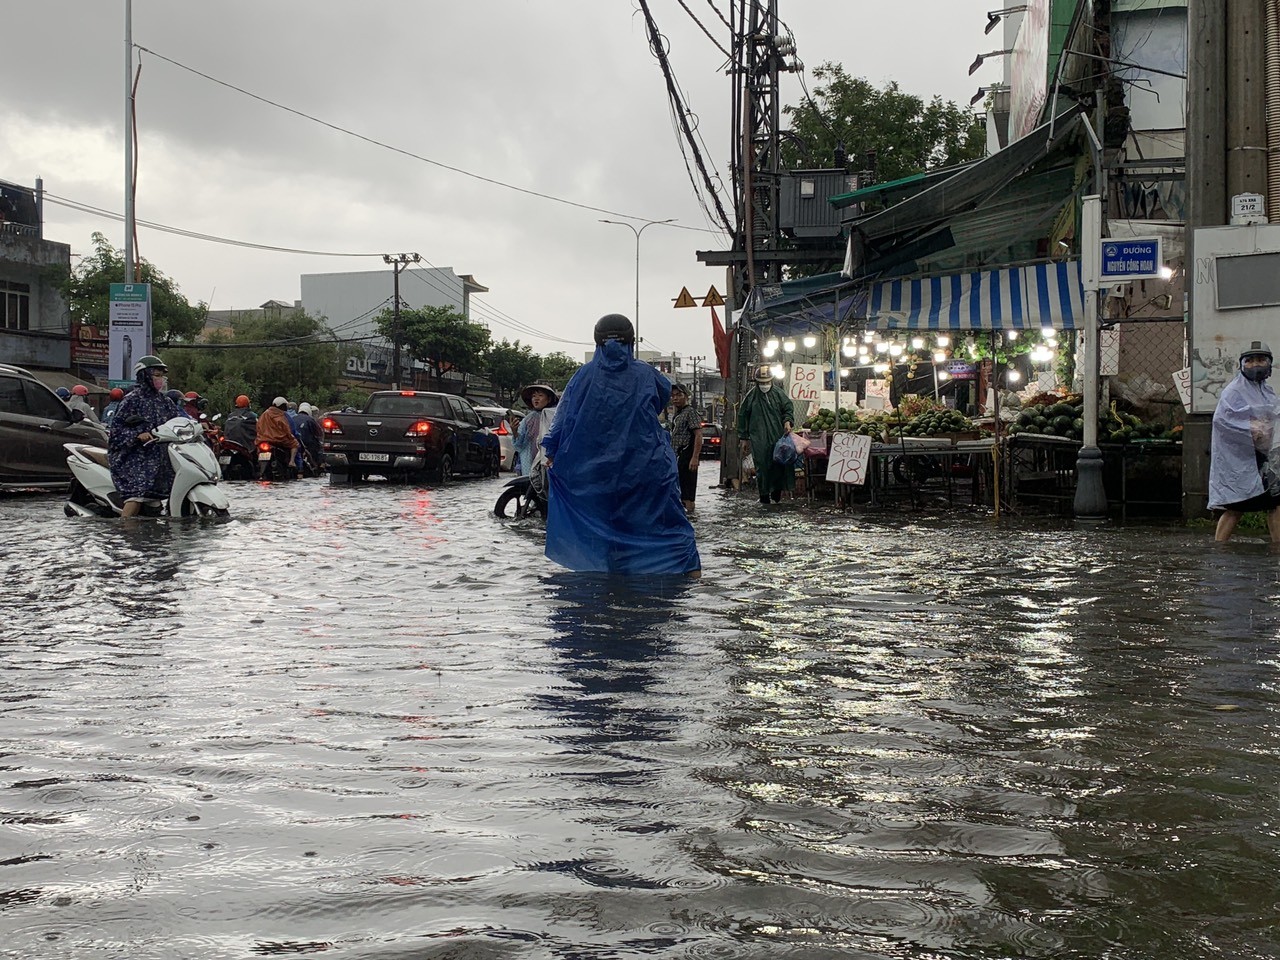 Áp thấp nhiệt đới hướng thẳng Đà Nẵng, mưa như trút nước, đường hóa thành sông - Ảnh 12.